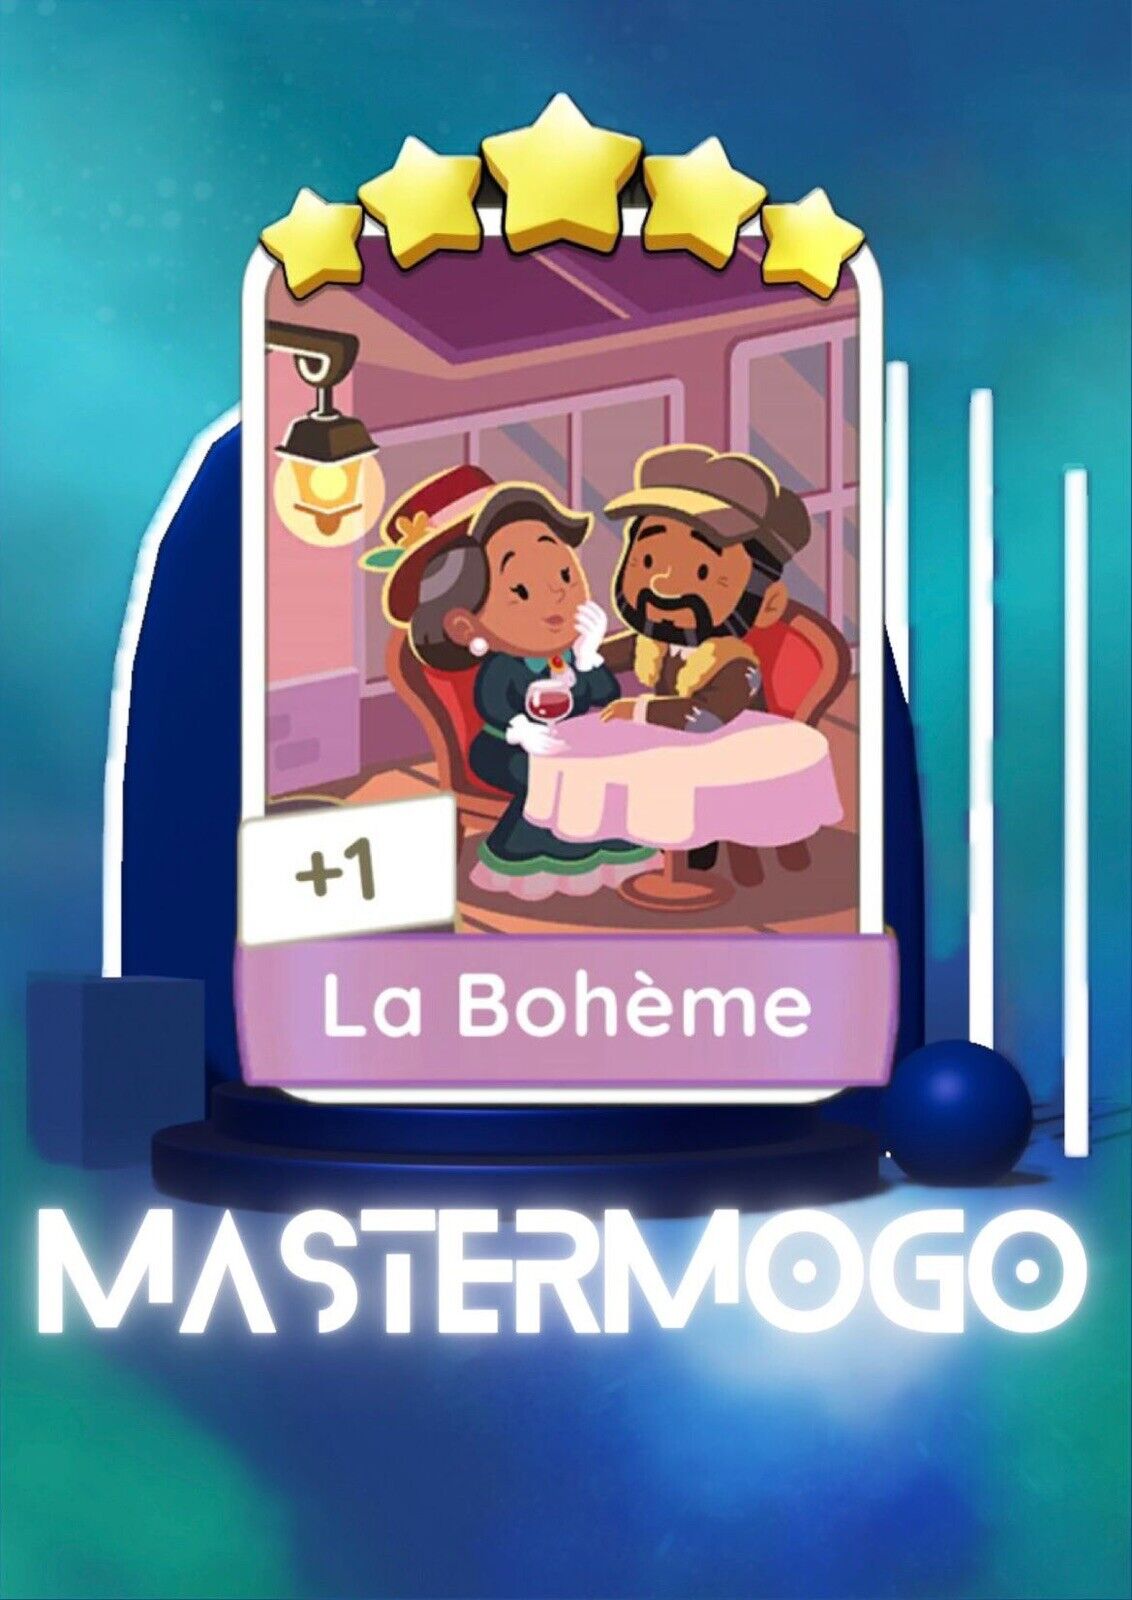 Monopoly Go- La Boheme 5 ⭐- set #21 Sticker